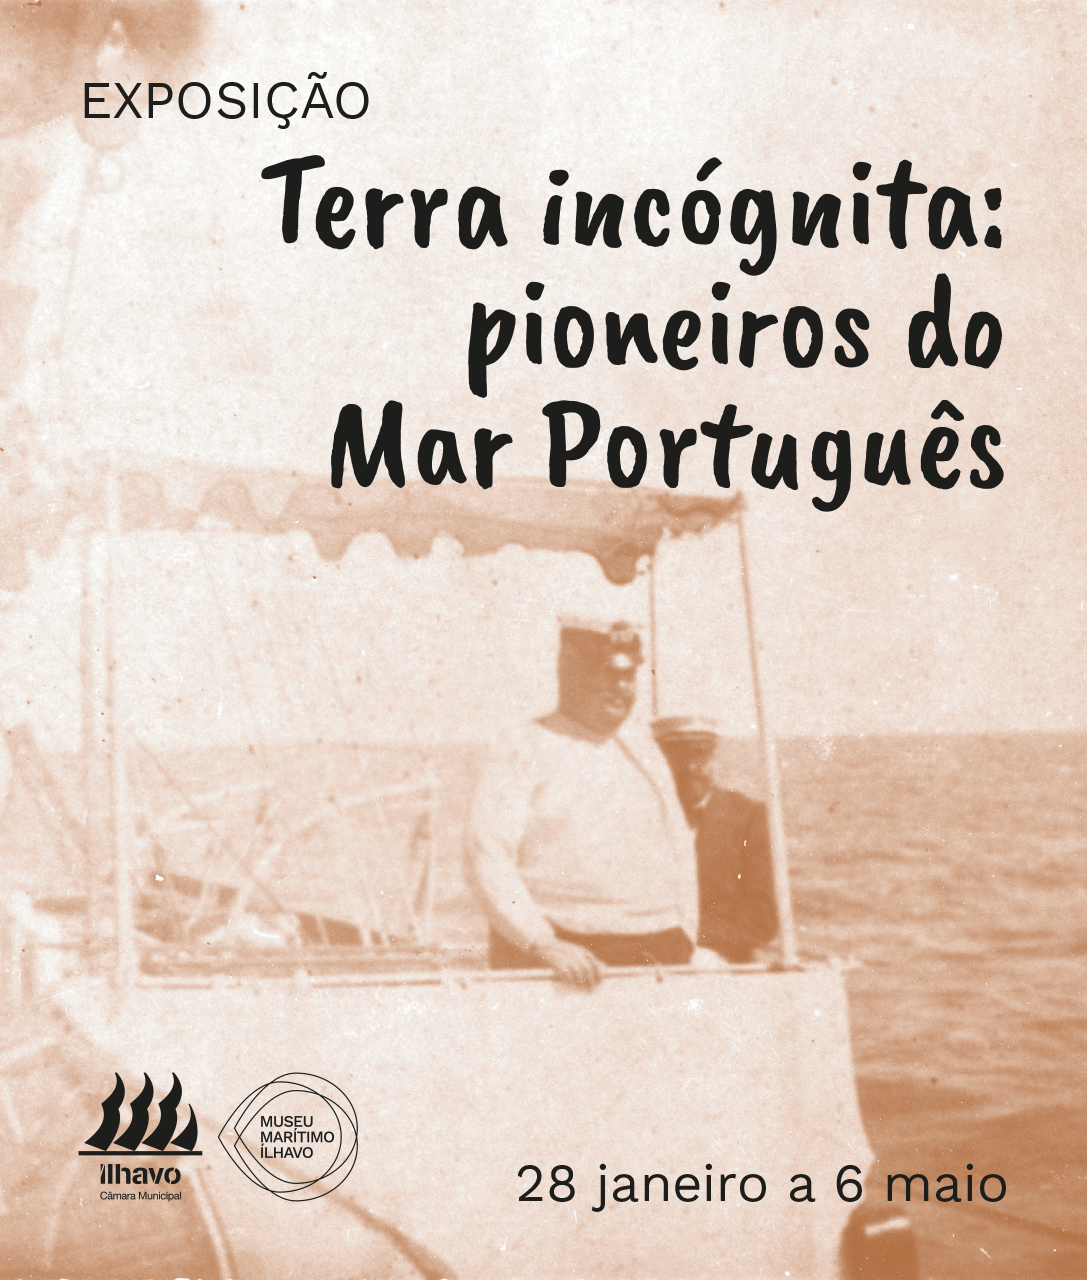 Exposição “Terra Incógnita: Pioneiros do mar português”